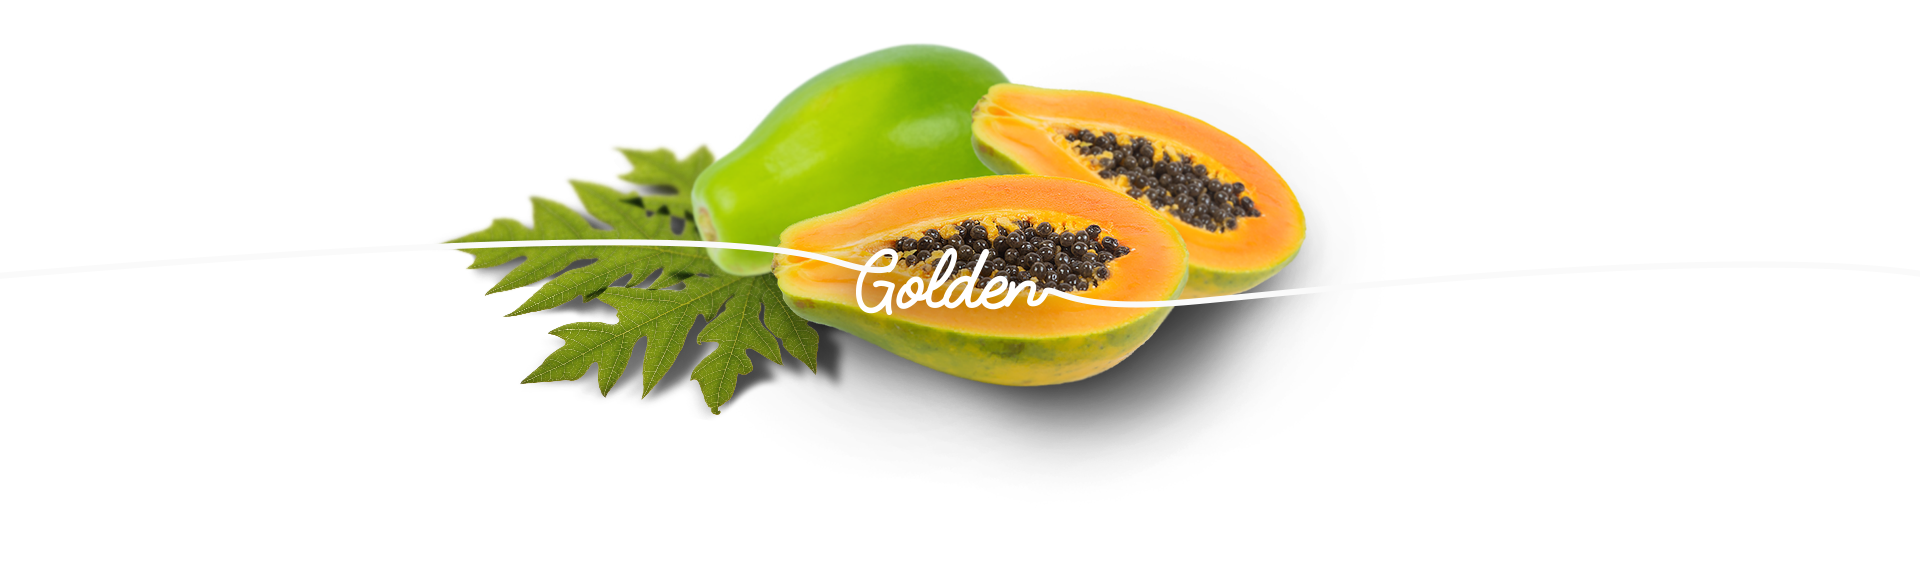 Papaya Golden